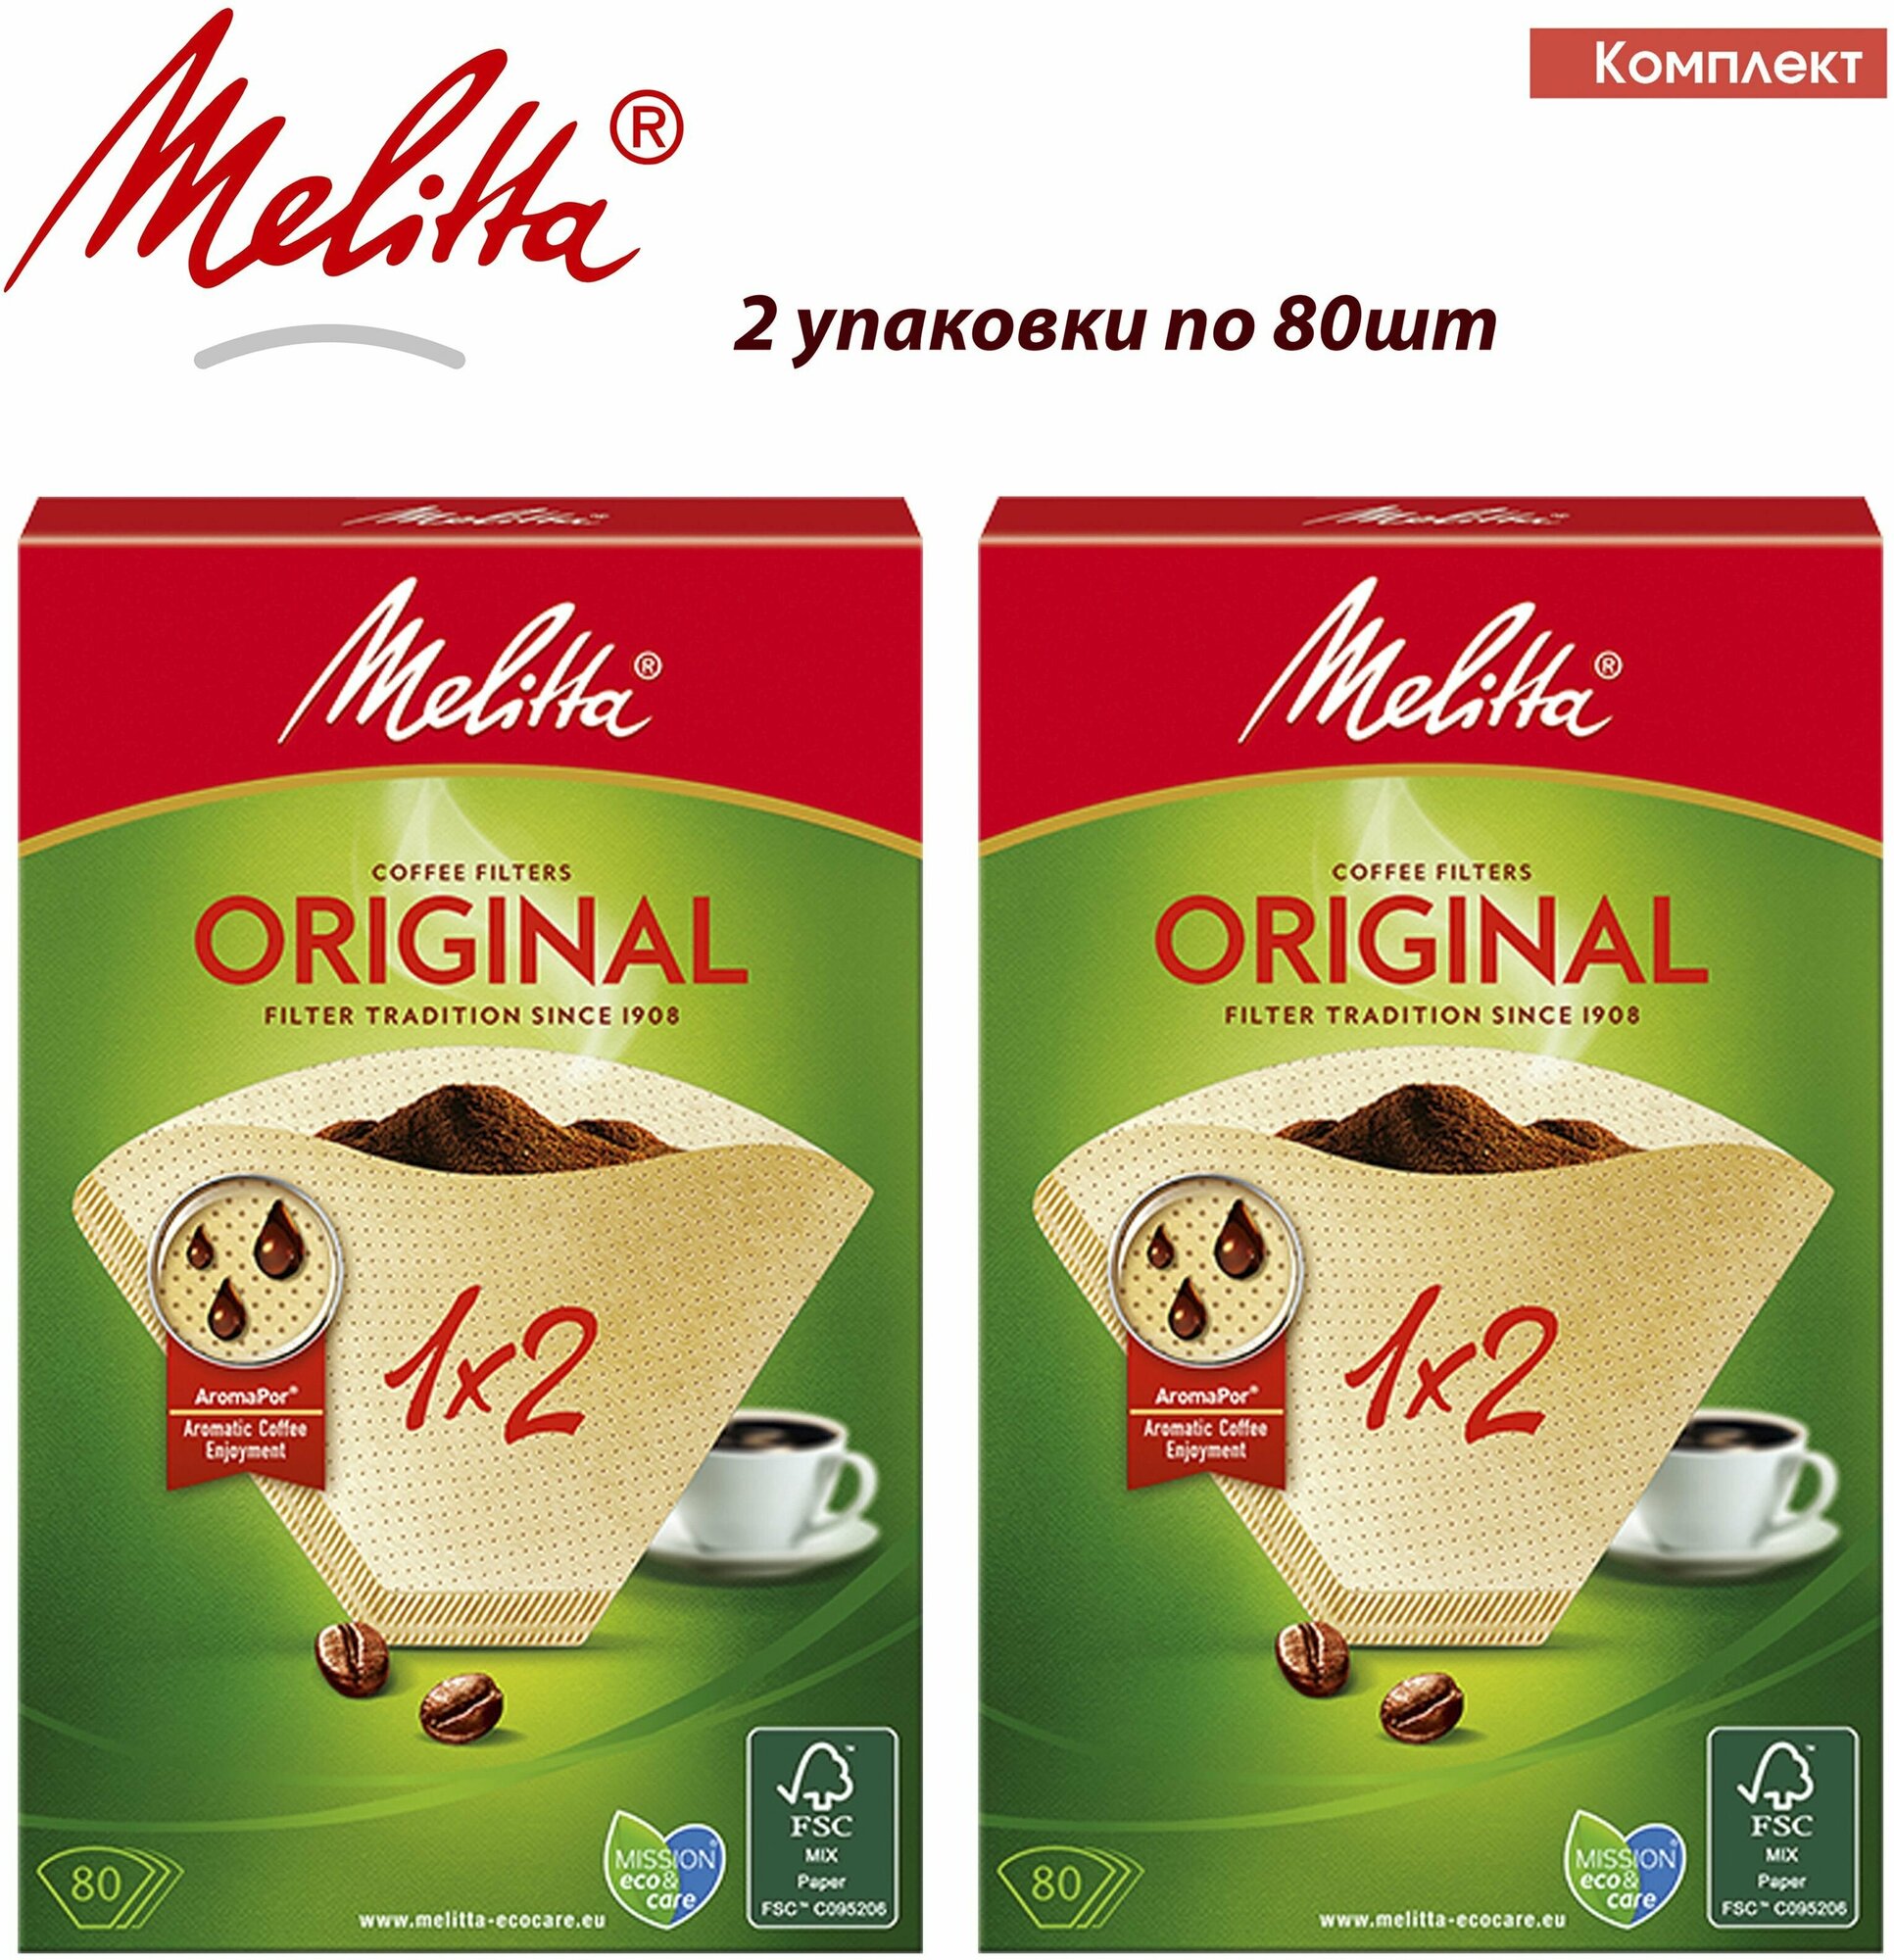 Комплект 2 упаковки. Melitta Original, Brown фильтры для заваривания кофе, 1х2/80